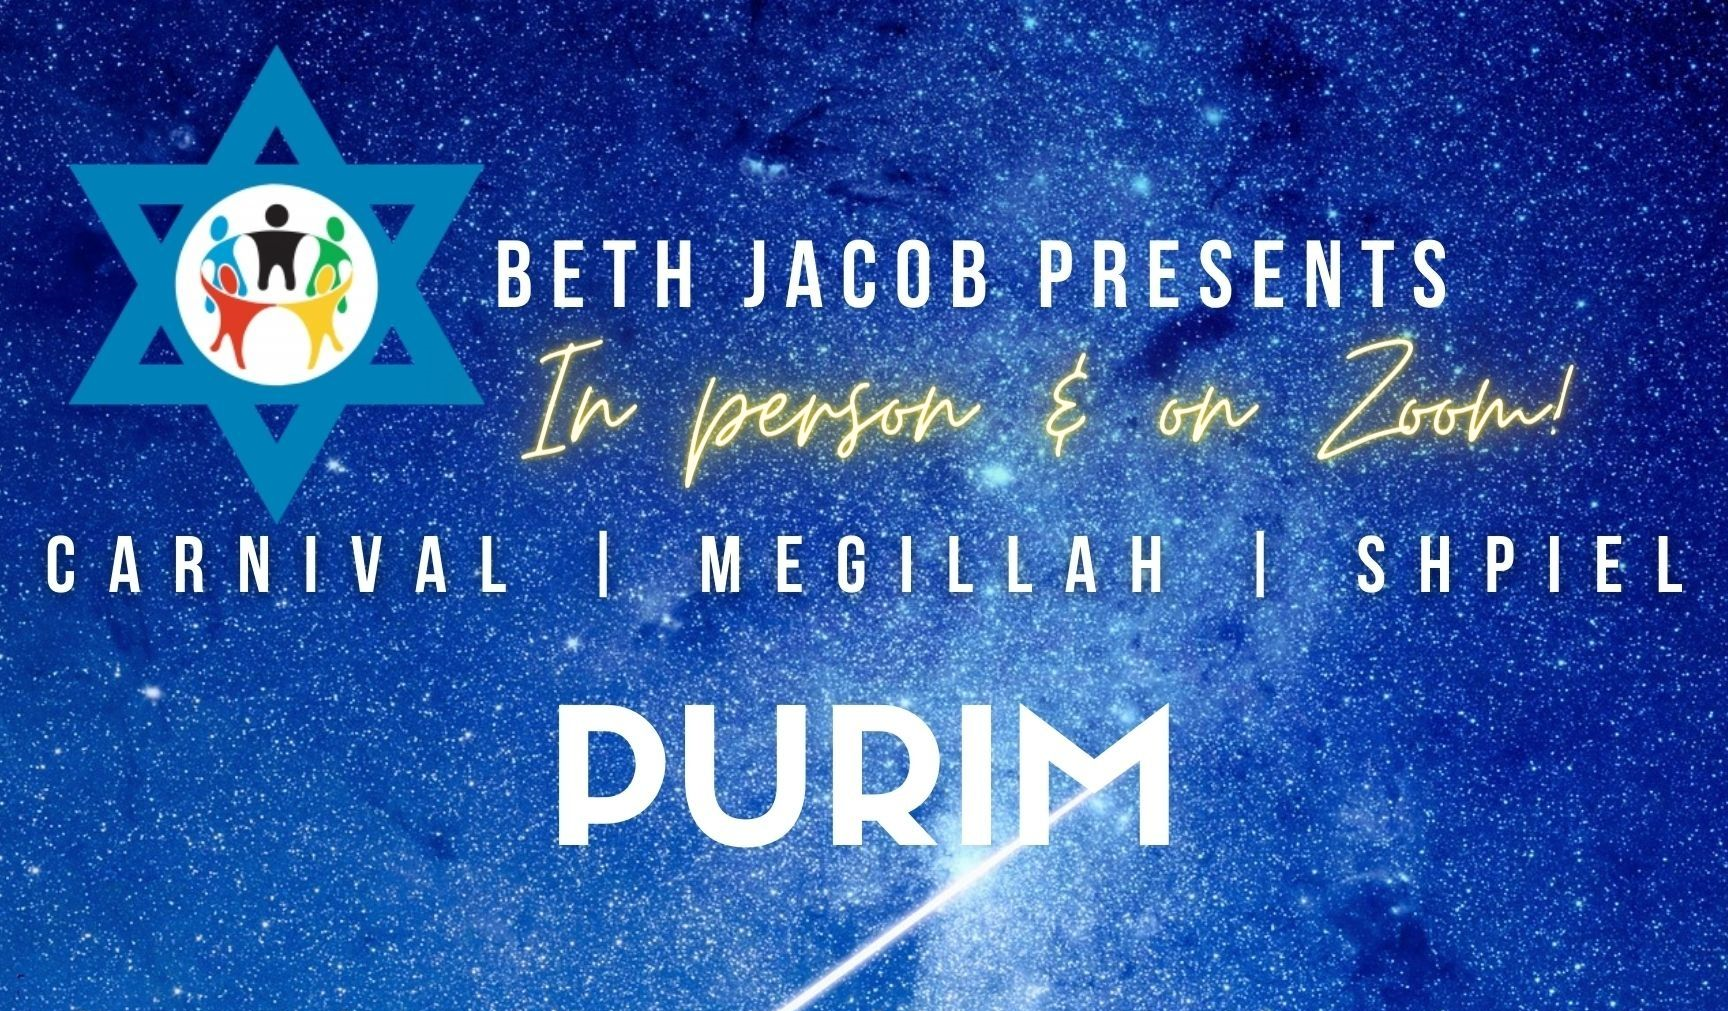 Purim Carnival & Megillah Readings